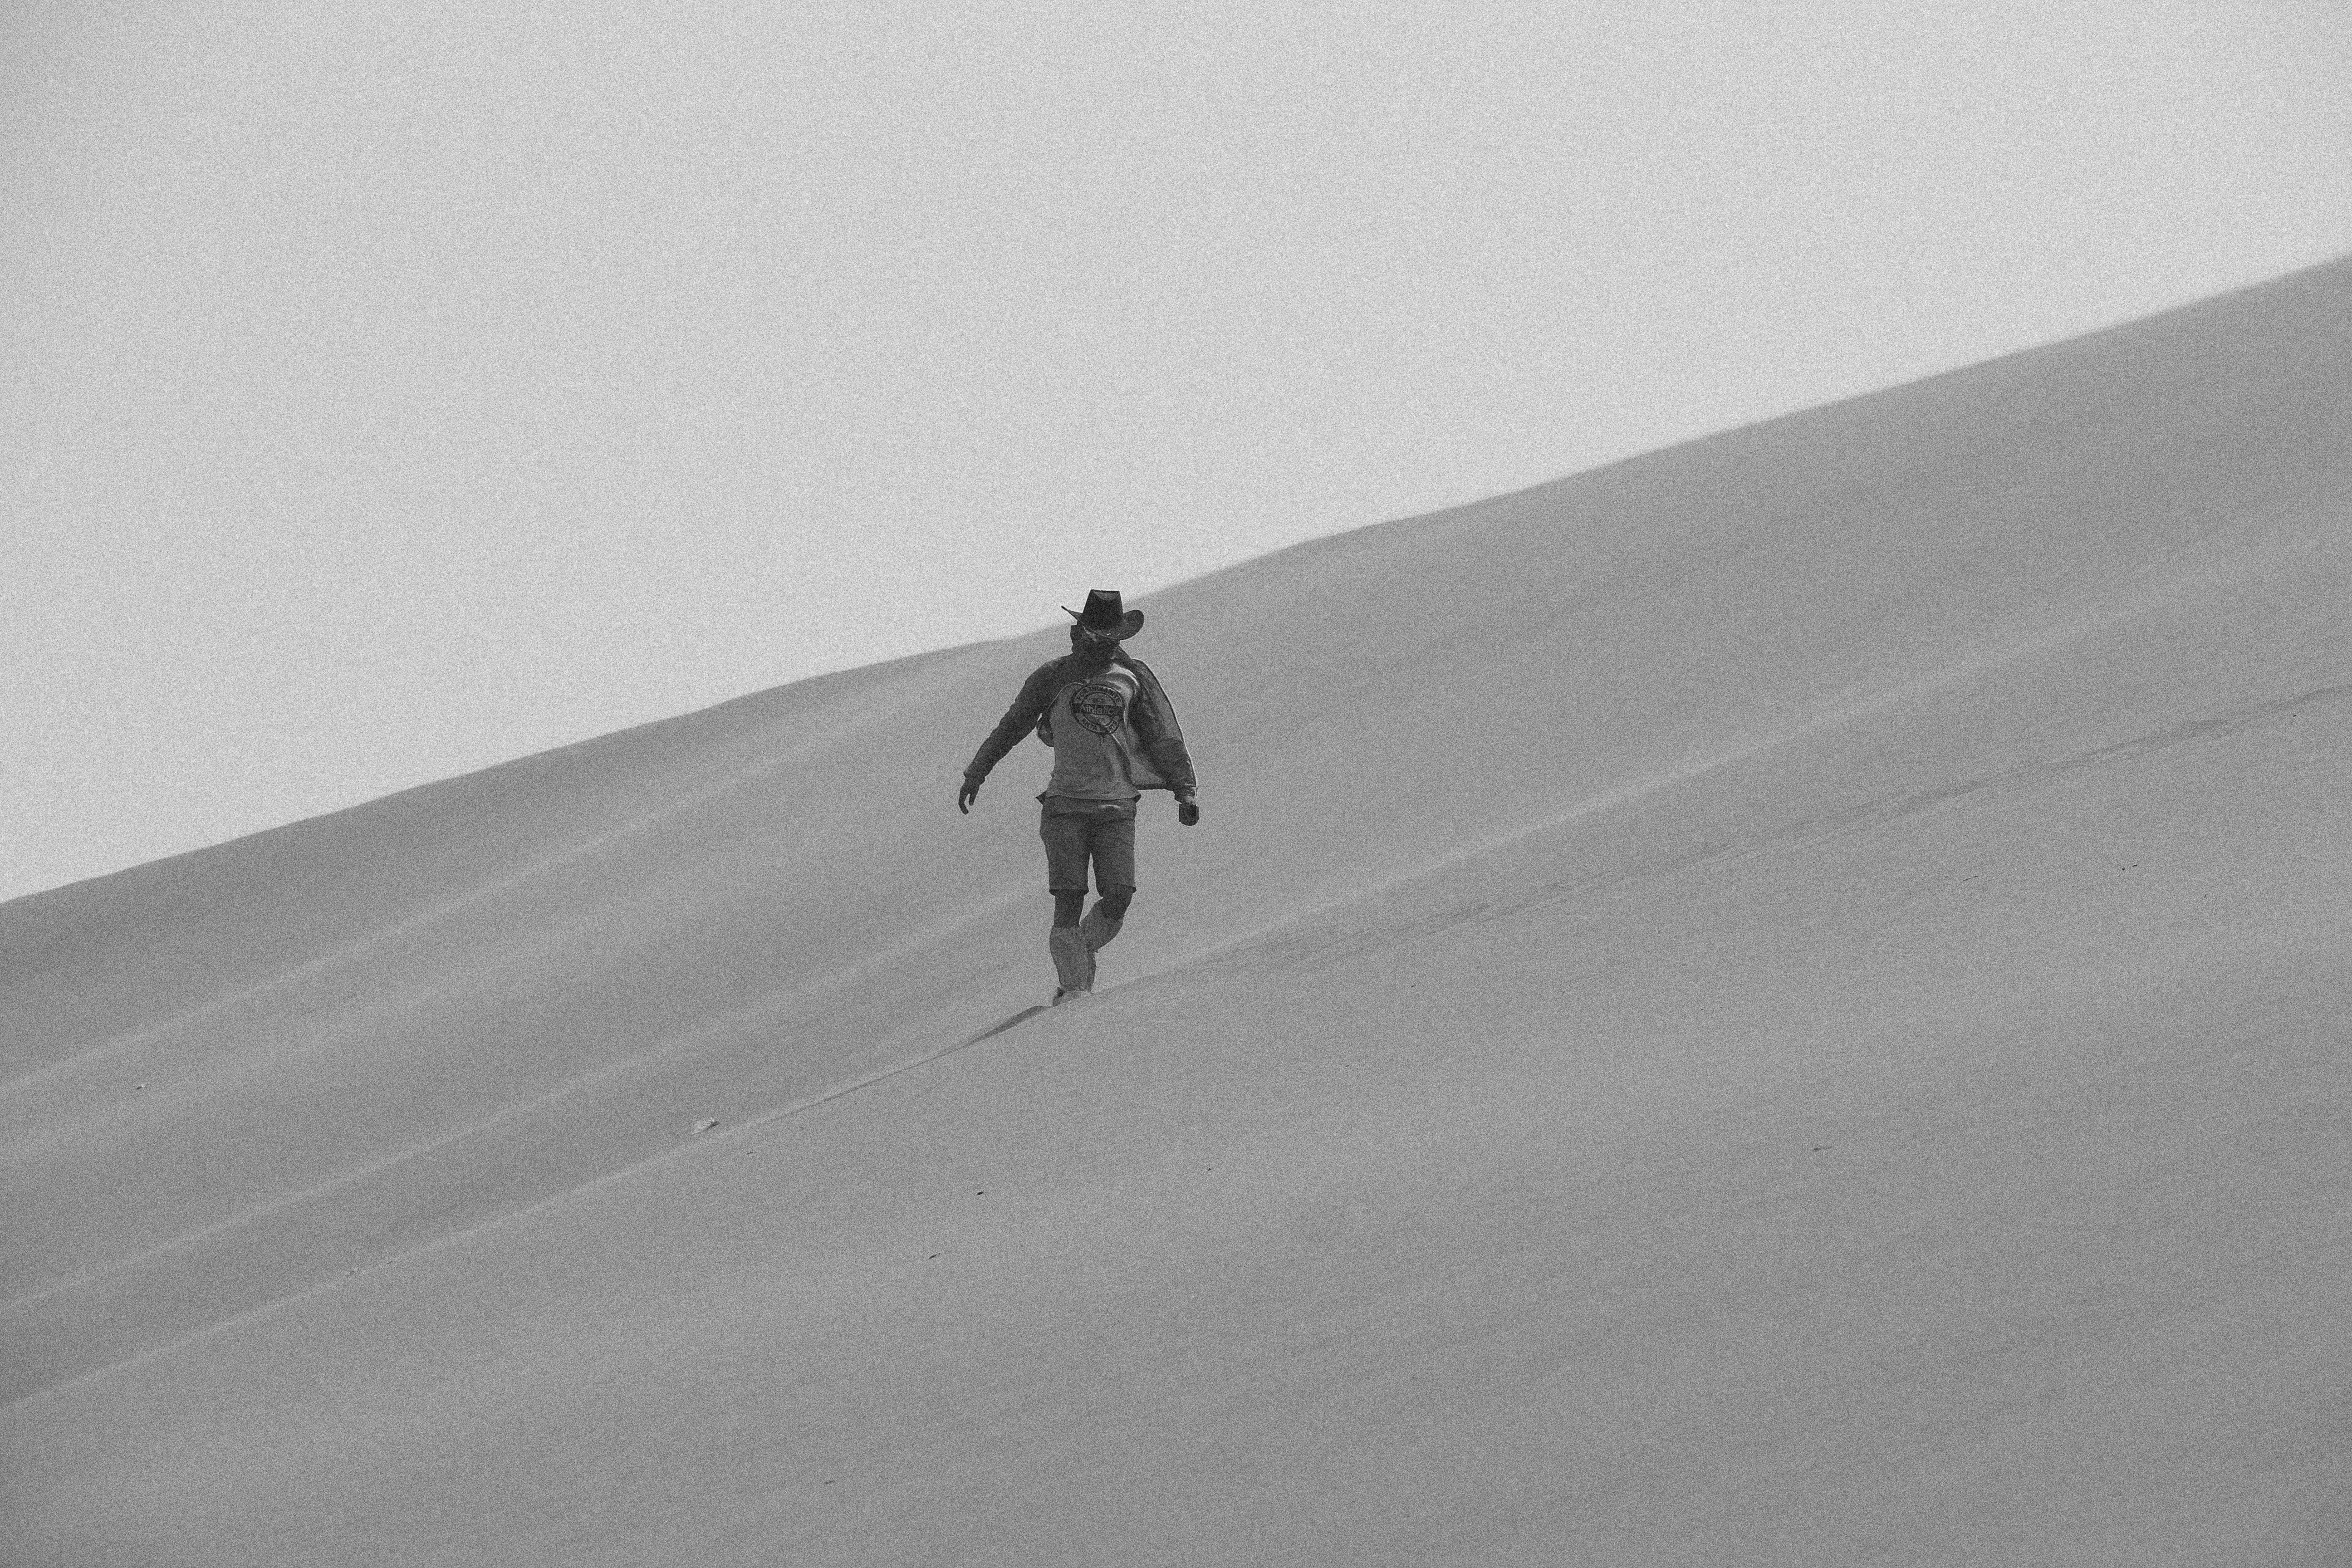 person wearing hat walking on desert during daytime